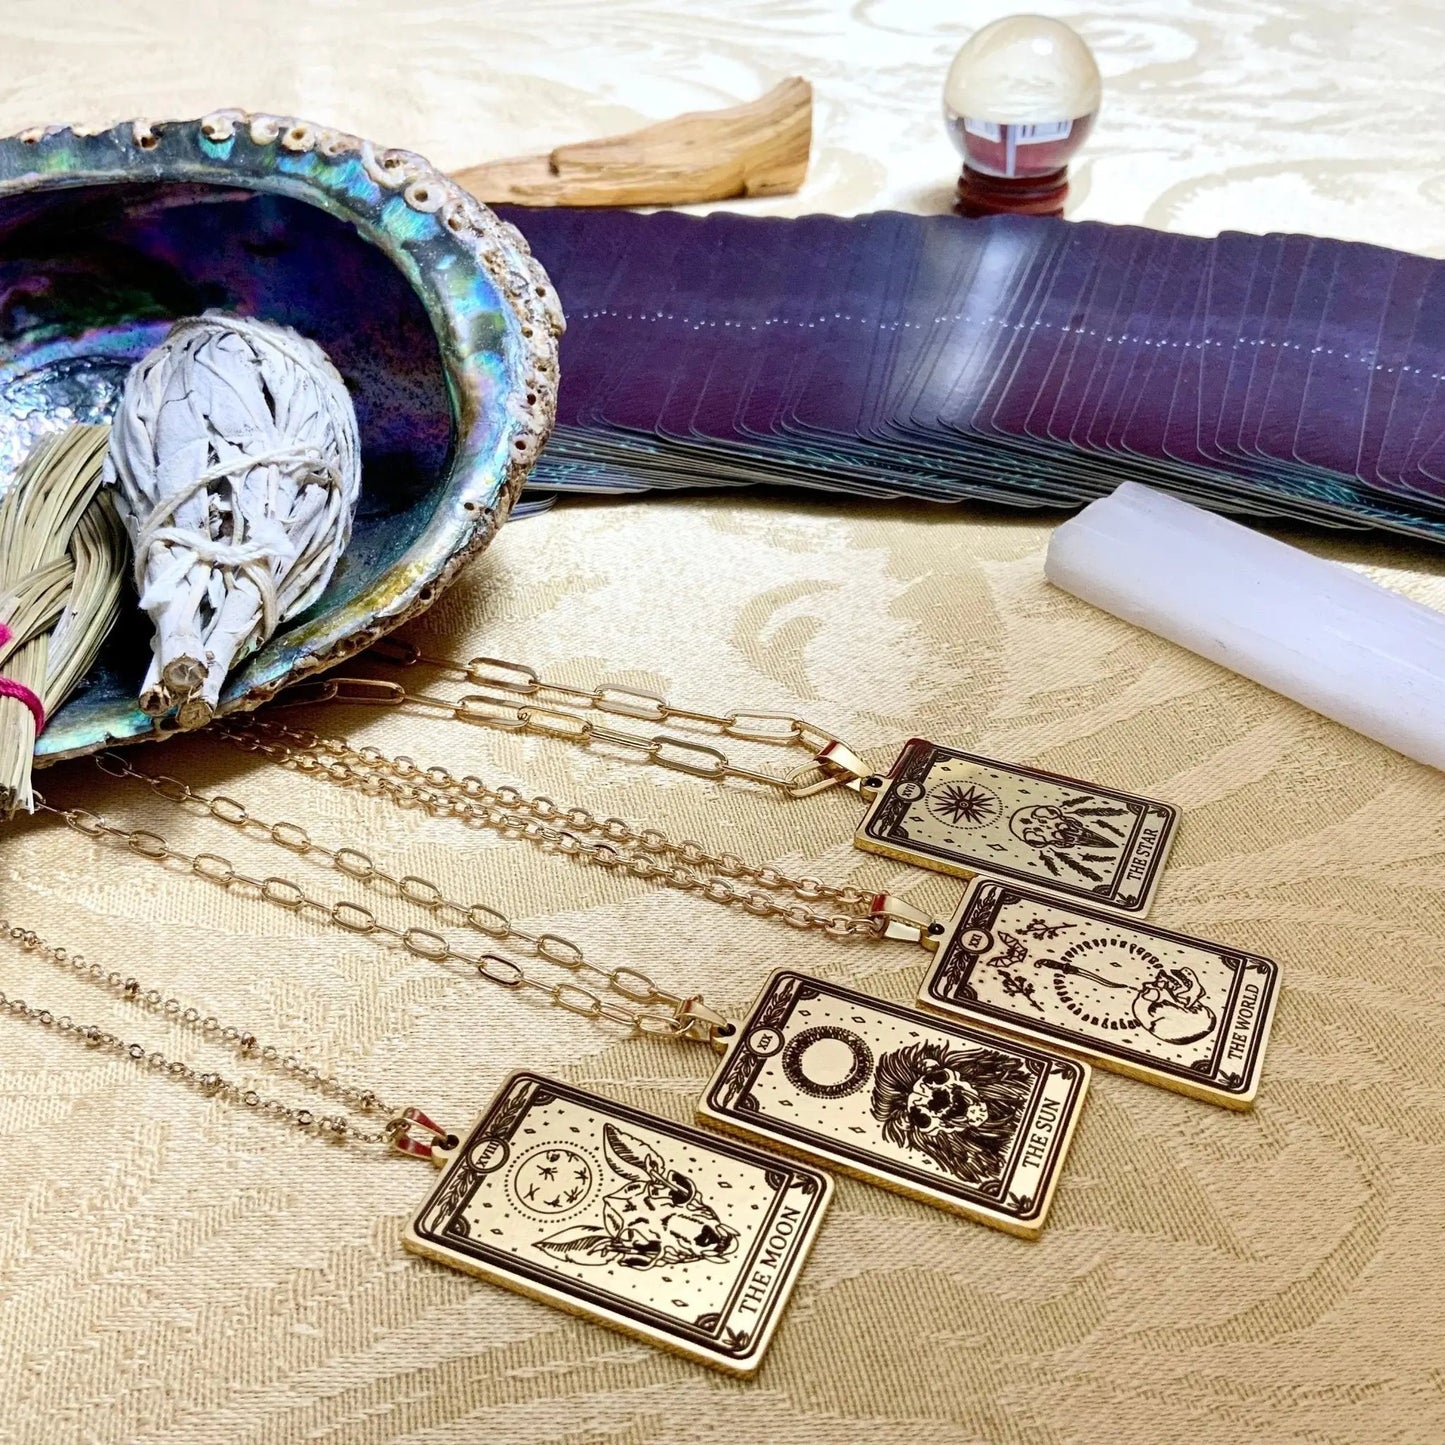 hierophant tarot card necklace